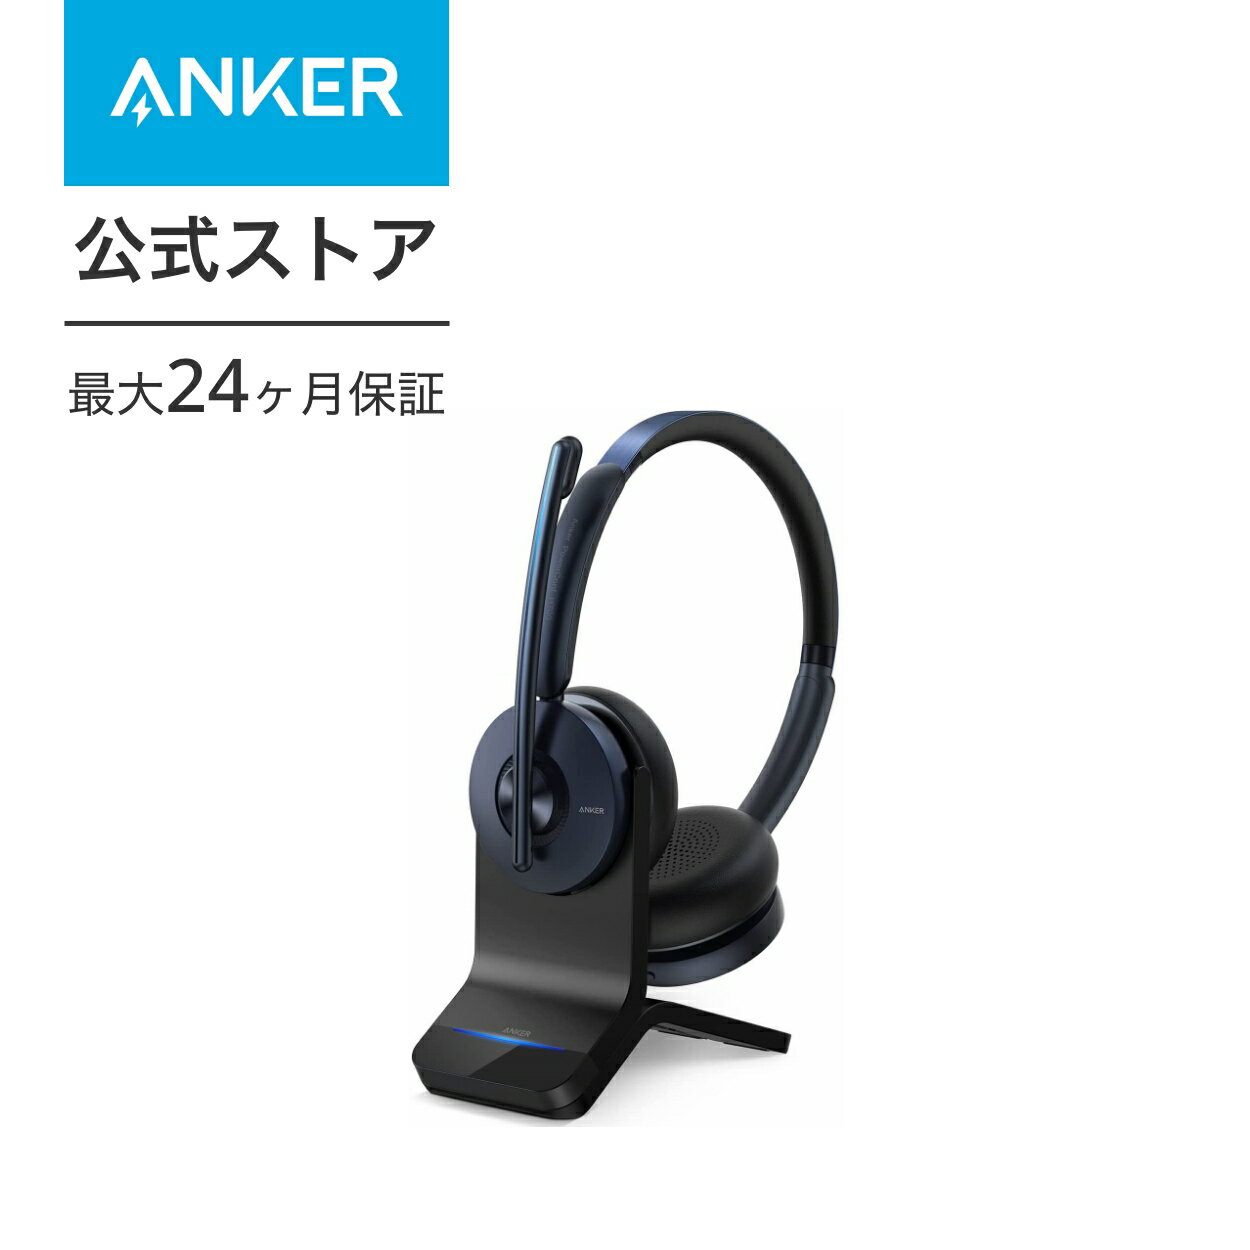 【3,000円OFF 5/16まで】【あす楽対応】Anker PowerConf H700（ワイヤレスヘッドセット Bluetooth 5.0）充電スタンド付属【パソコン用 / Web会議 / 通話ノイズリダクション / マイク搭載 / アクティブノイズキャンセリング】